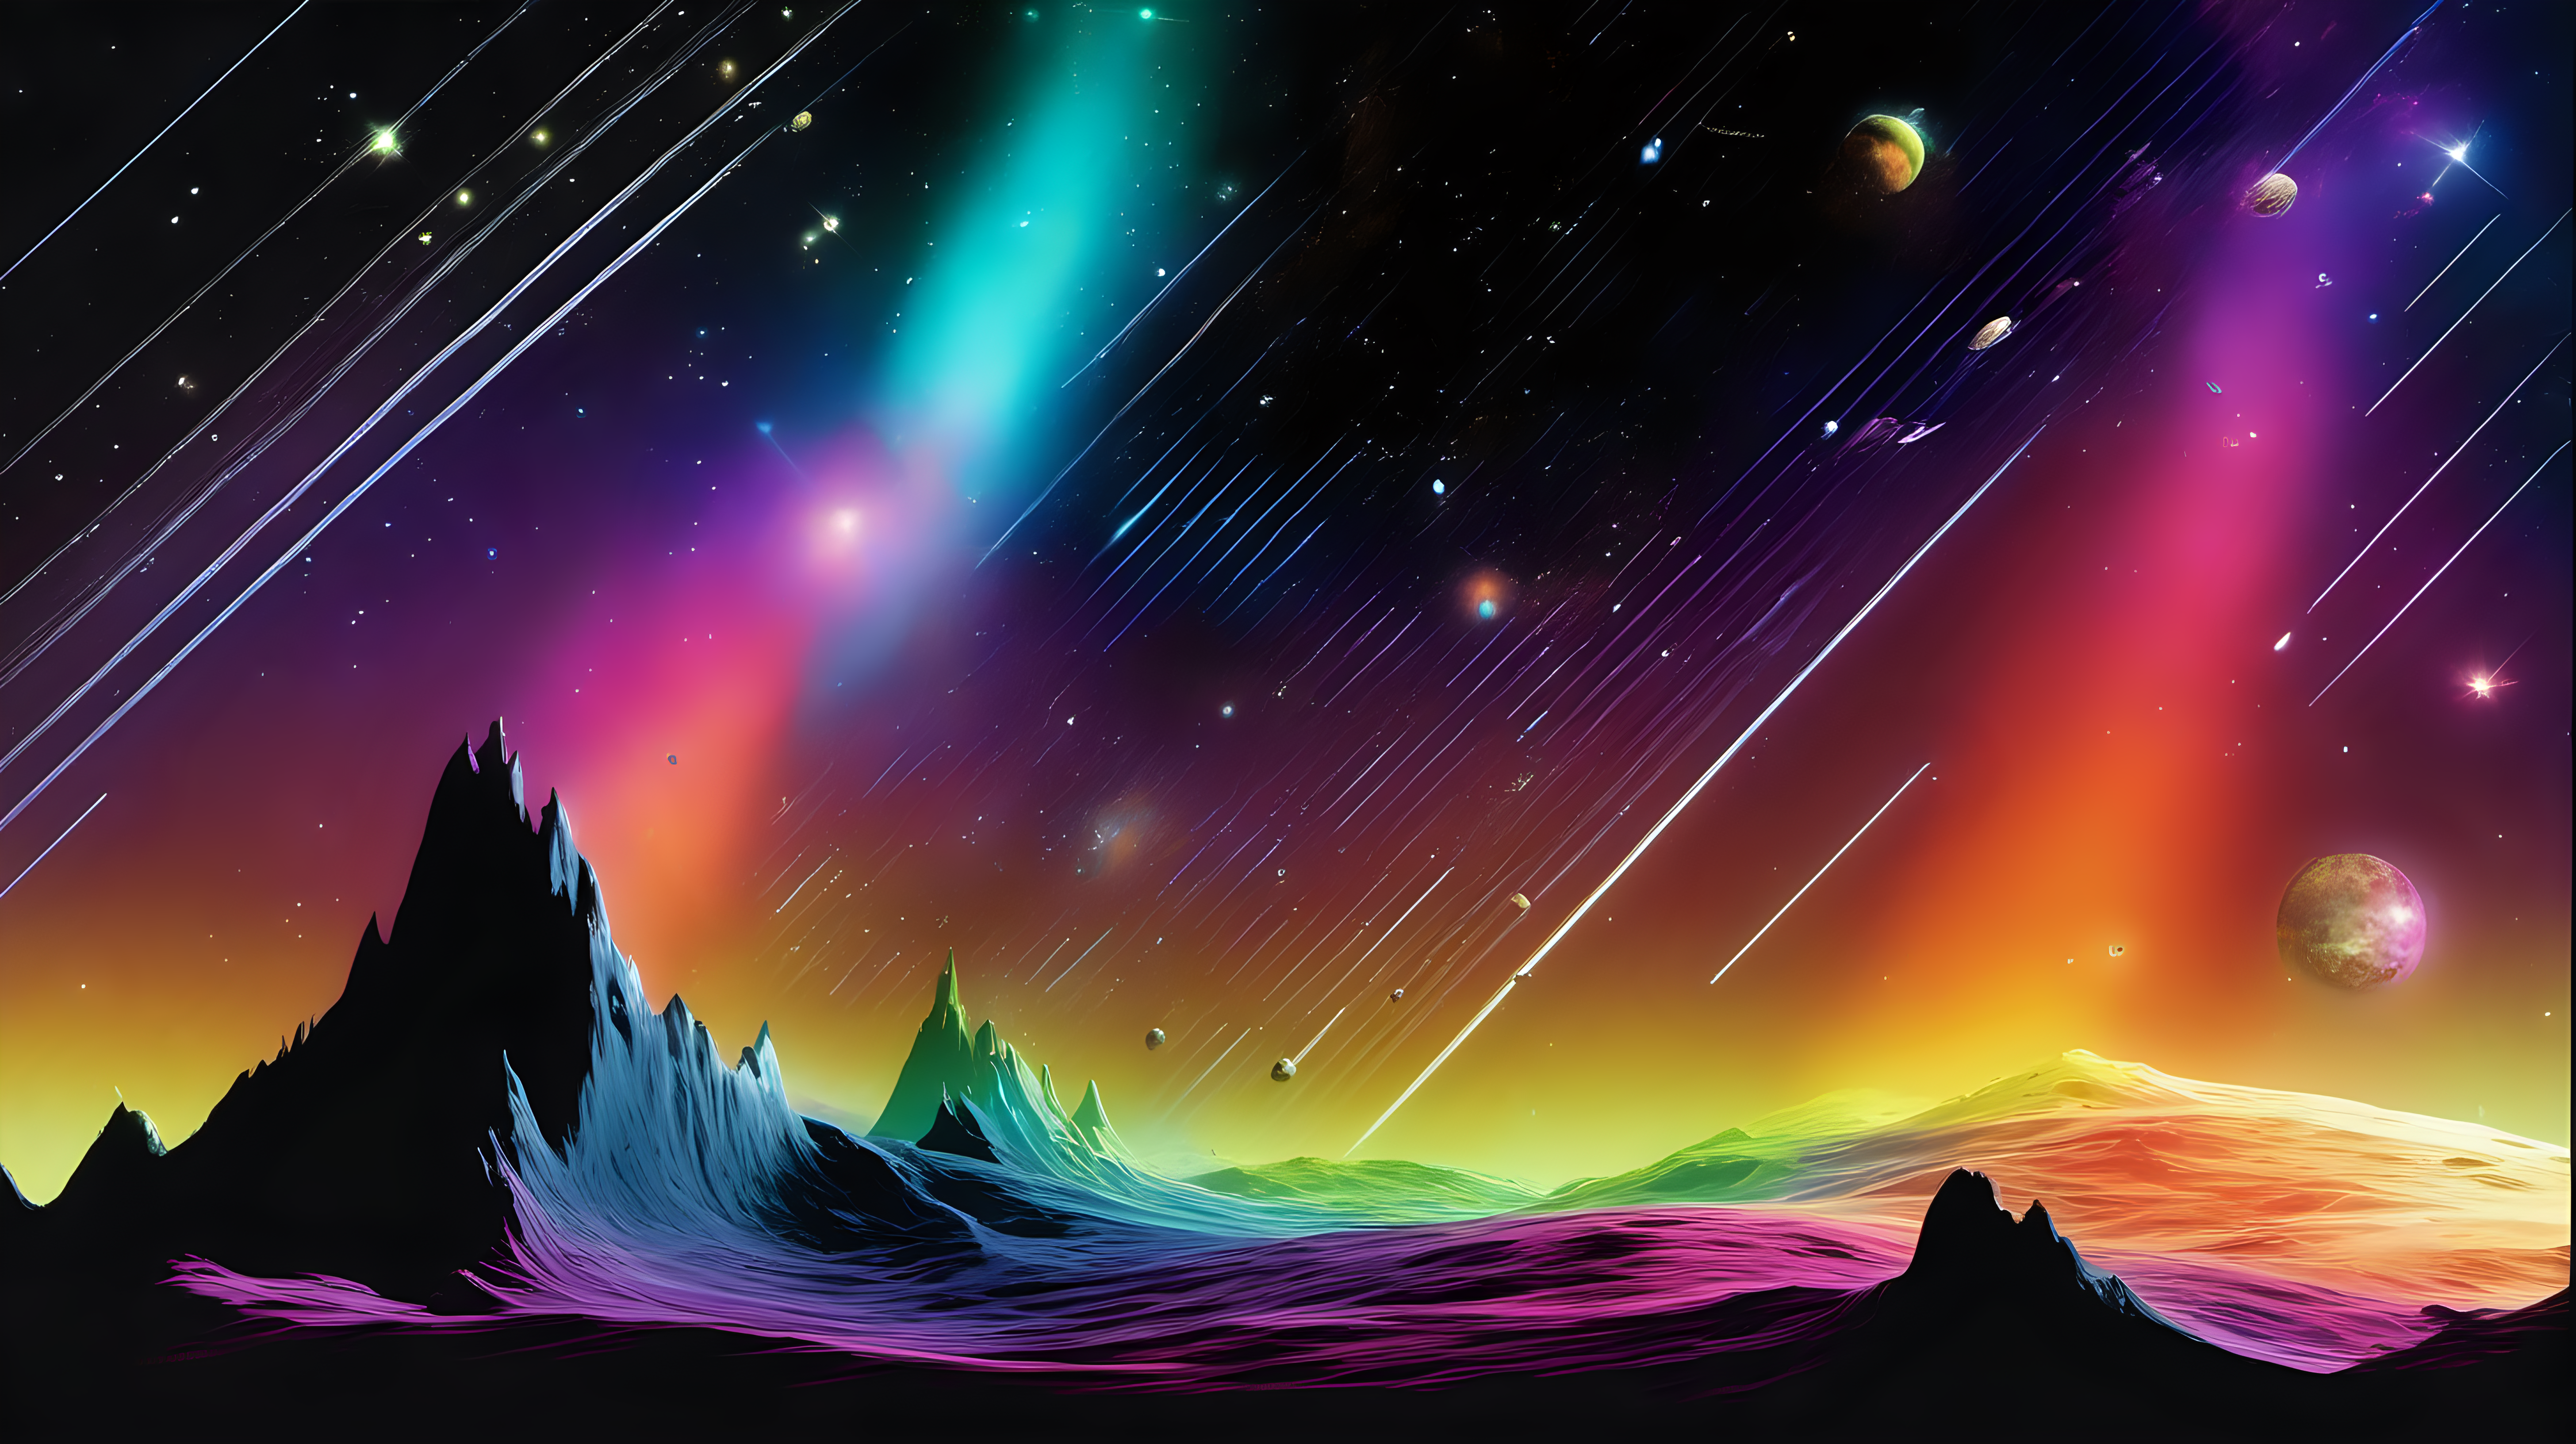 spectrum in space